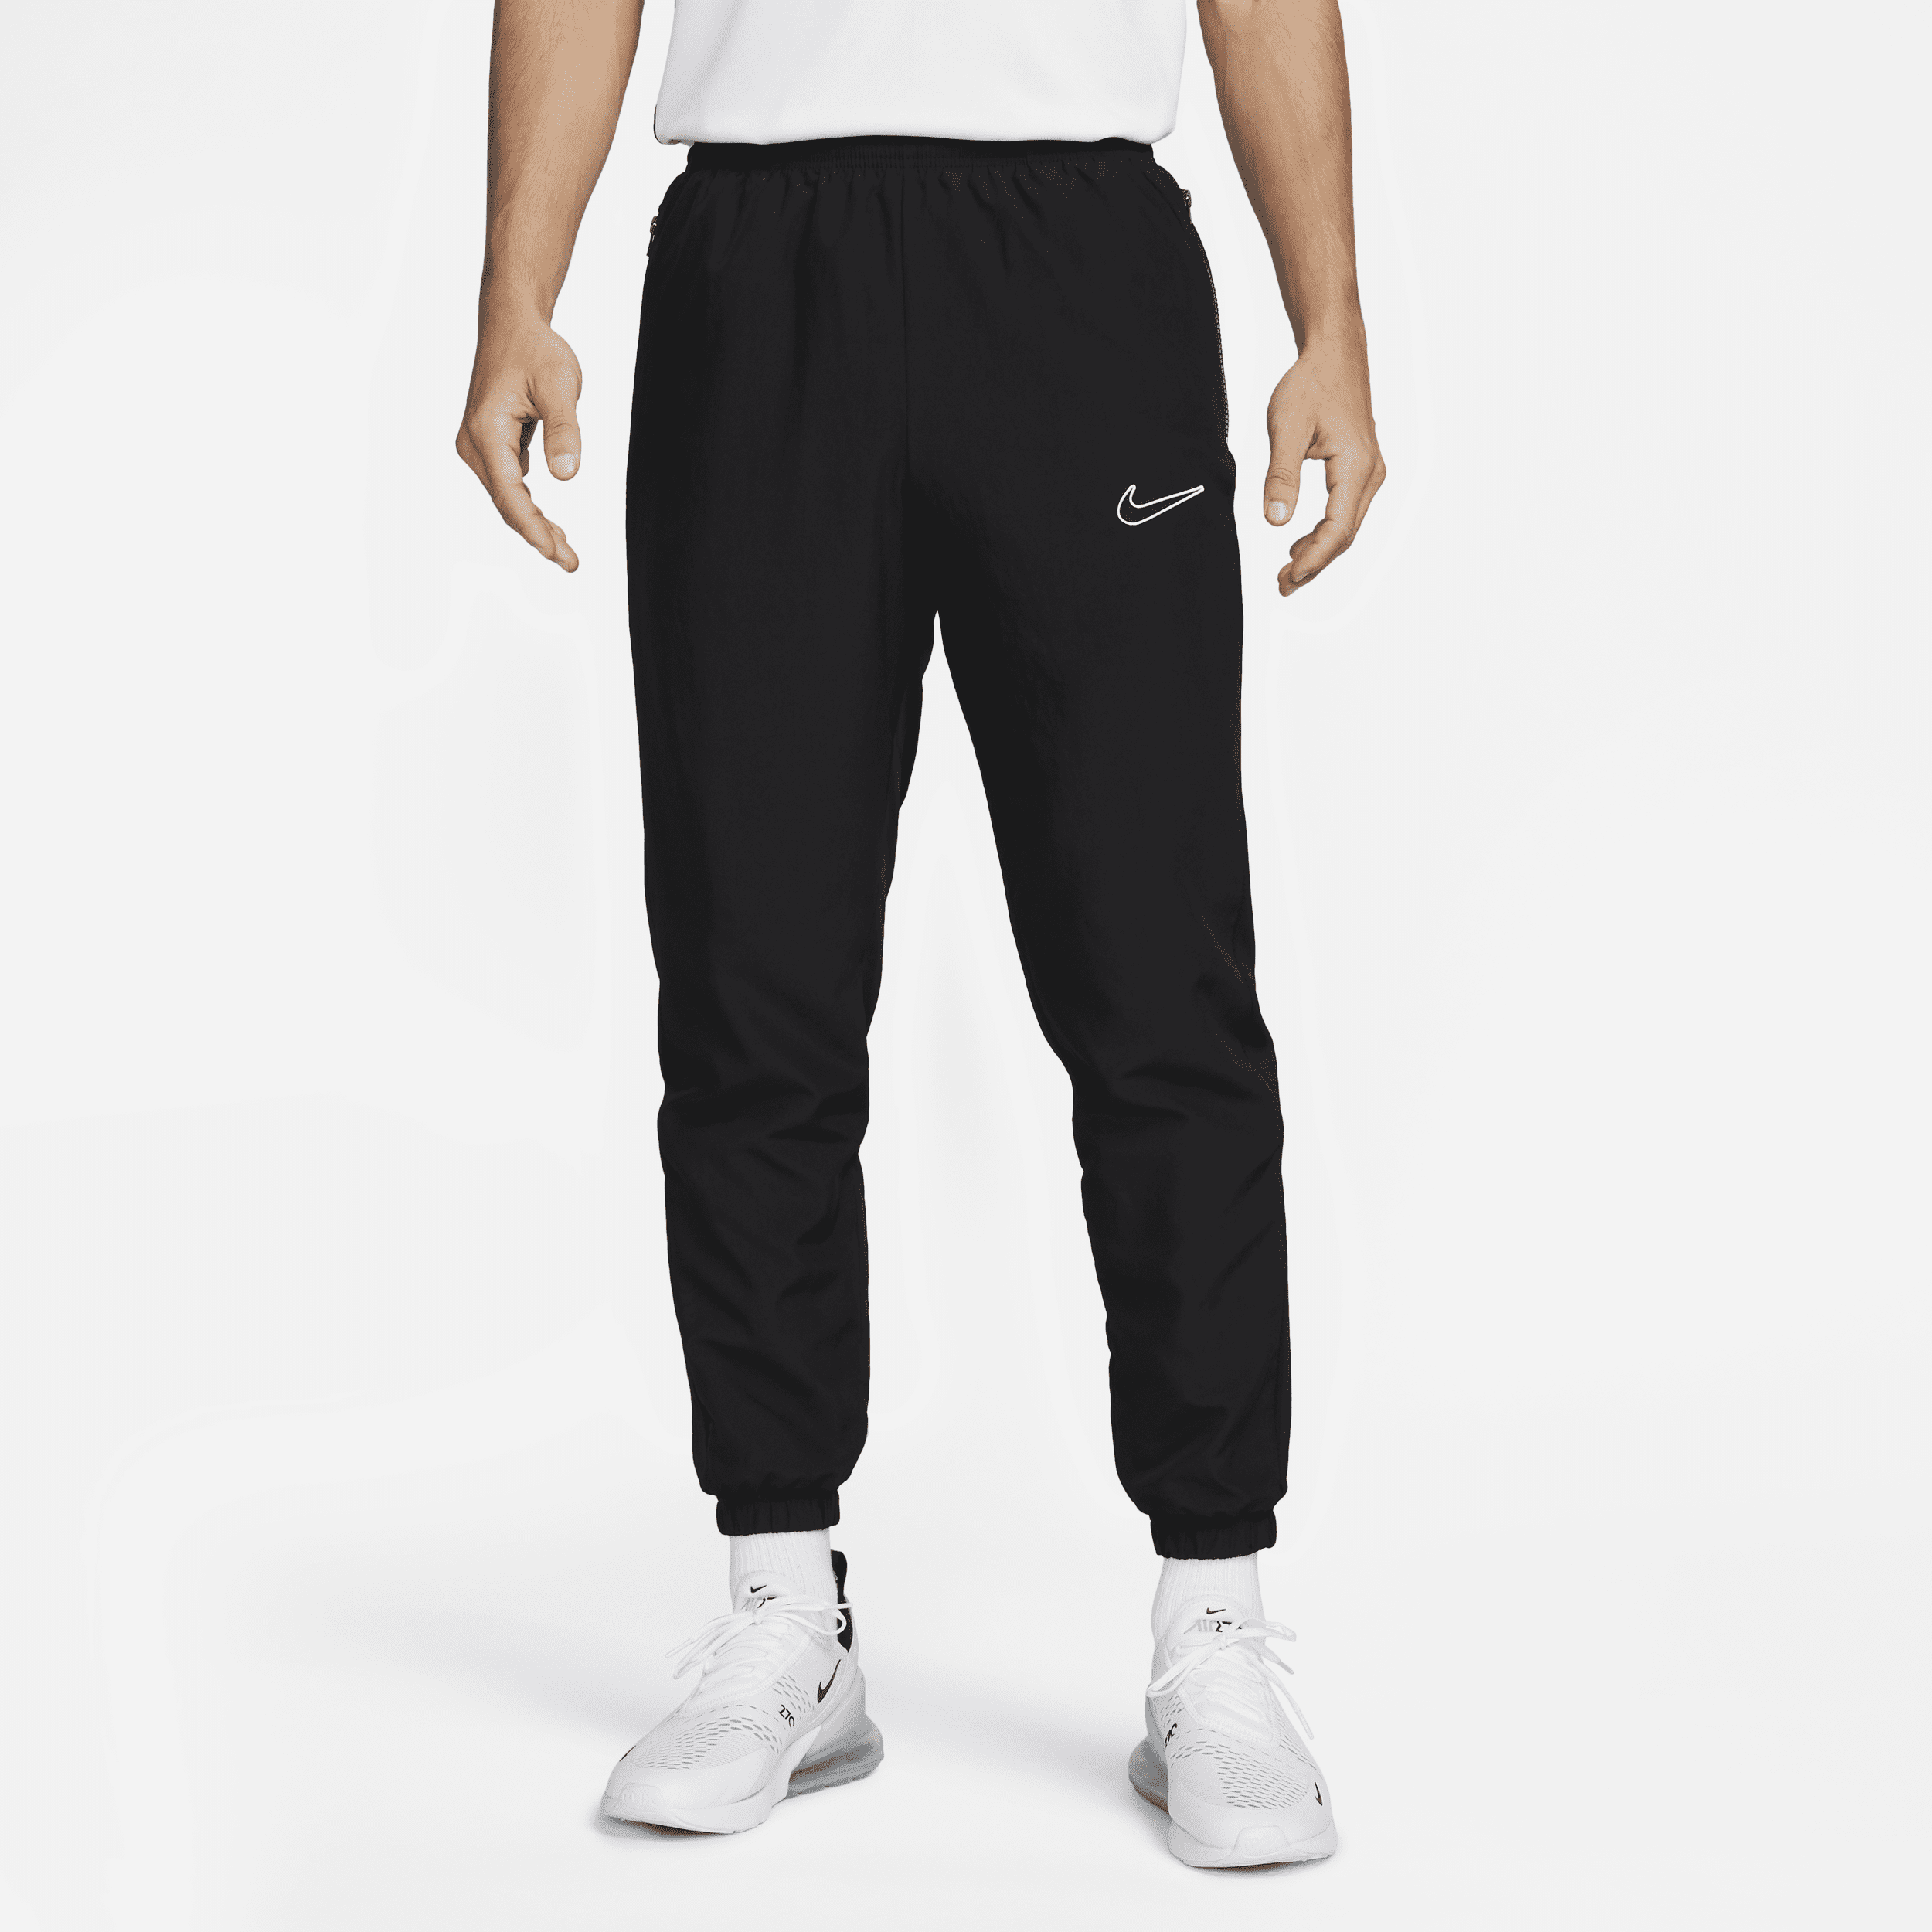 Pantaloni da calcio Dri-FIT Nike Academy – Uomo - Nero